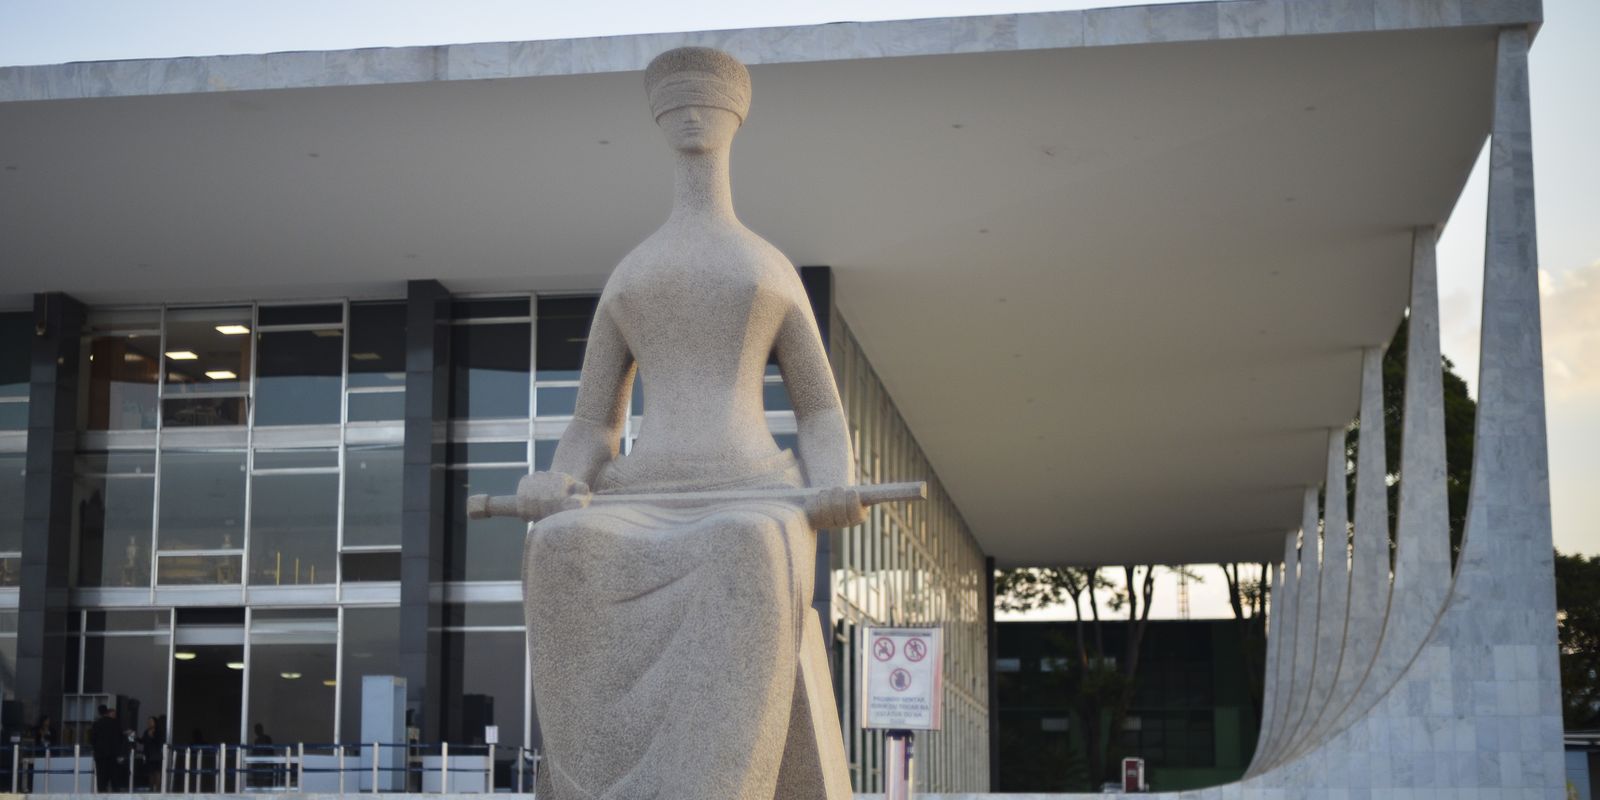 Fachada do Supremo Tribunal Federal (STF) com estátua A Justiça, de Alfredo Ceschiatti, em primeiro plano.